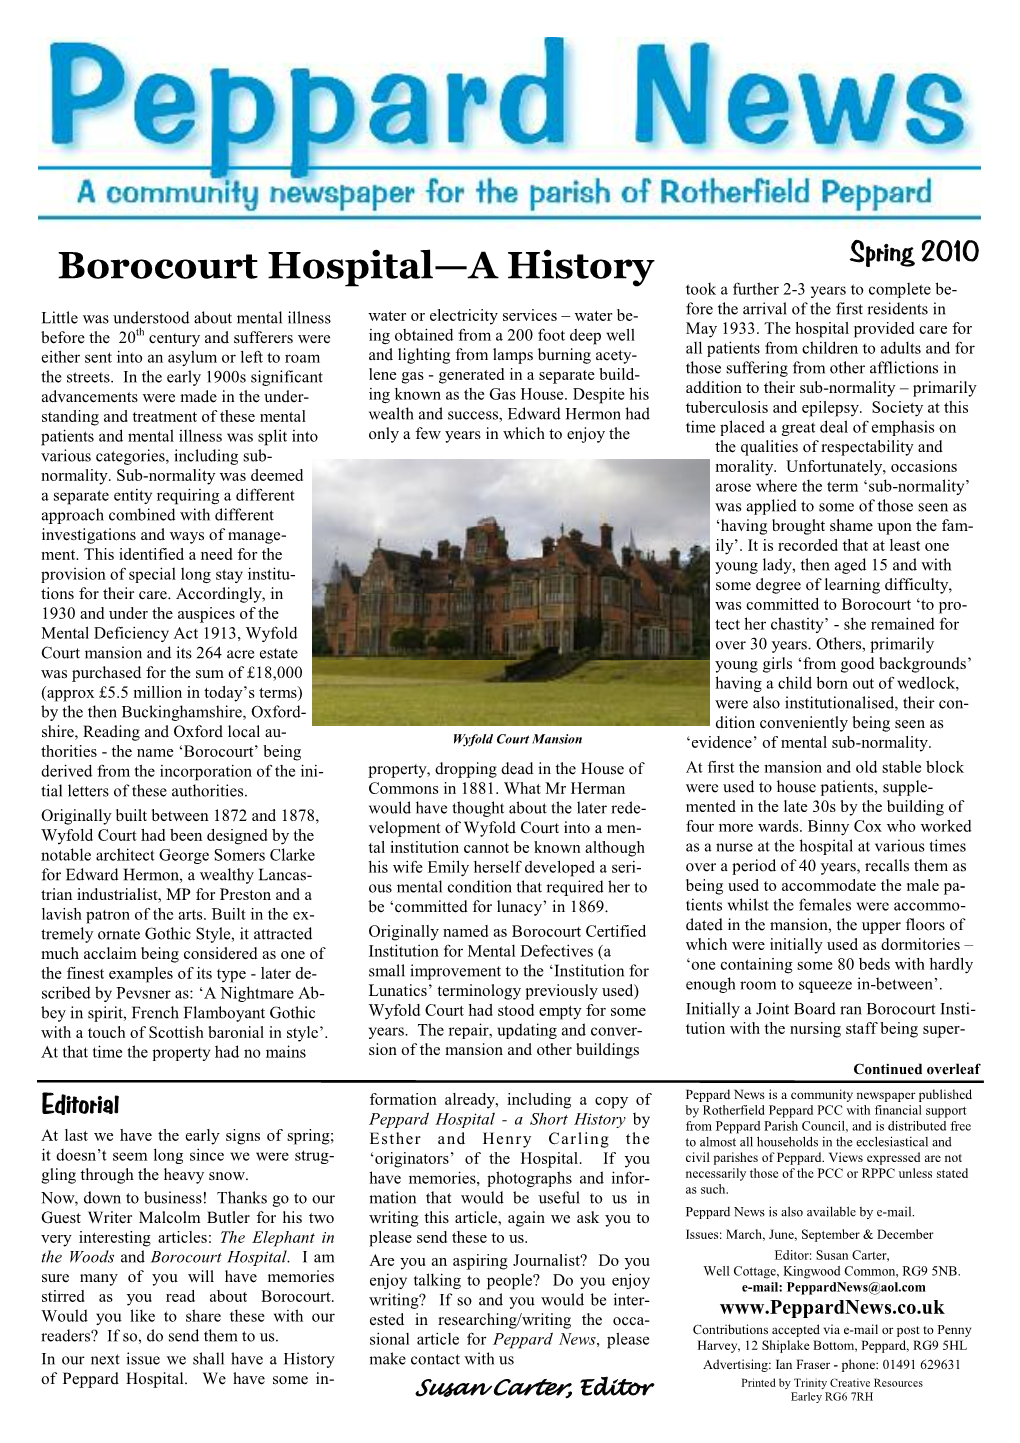 Borocourt Hospital—A History